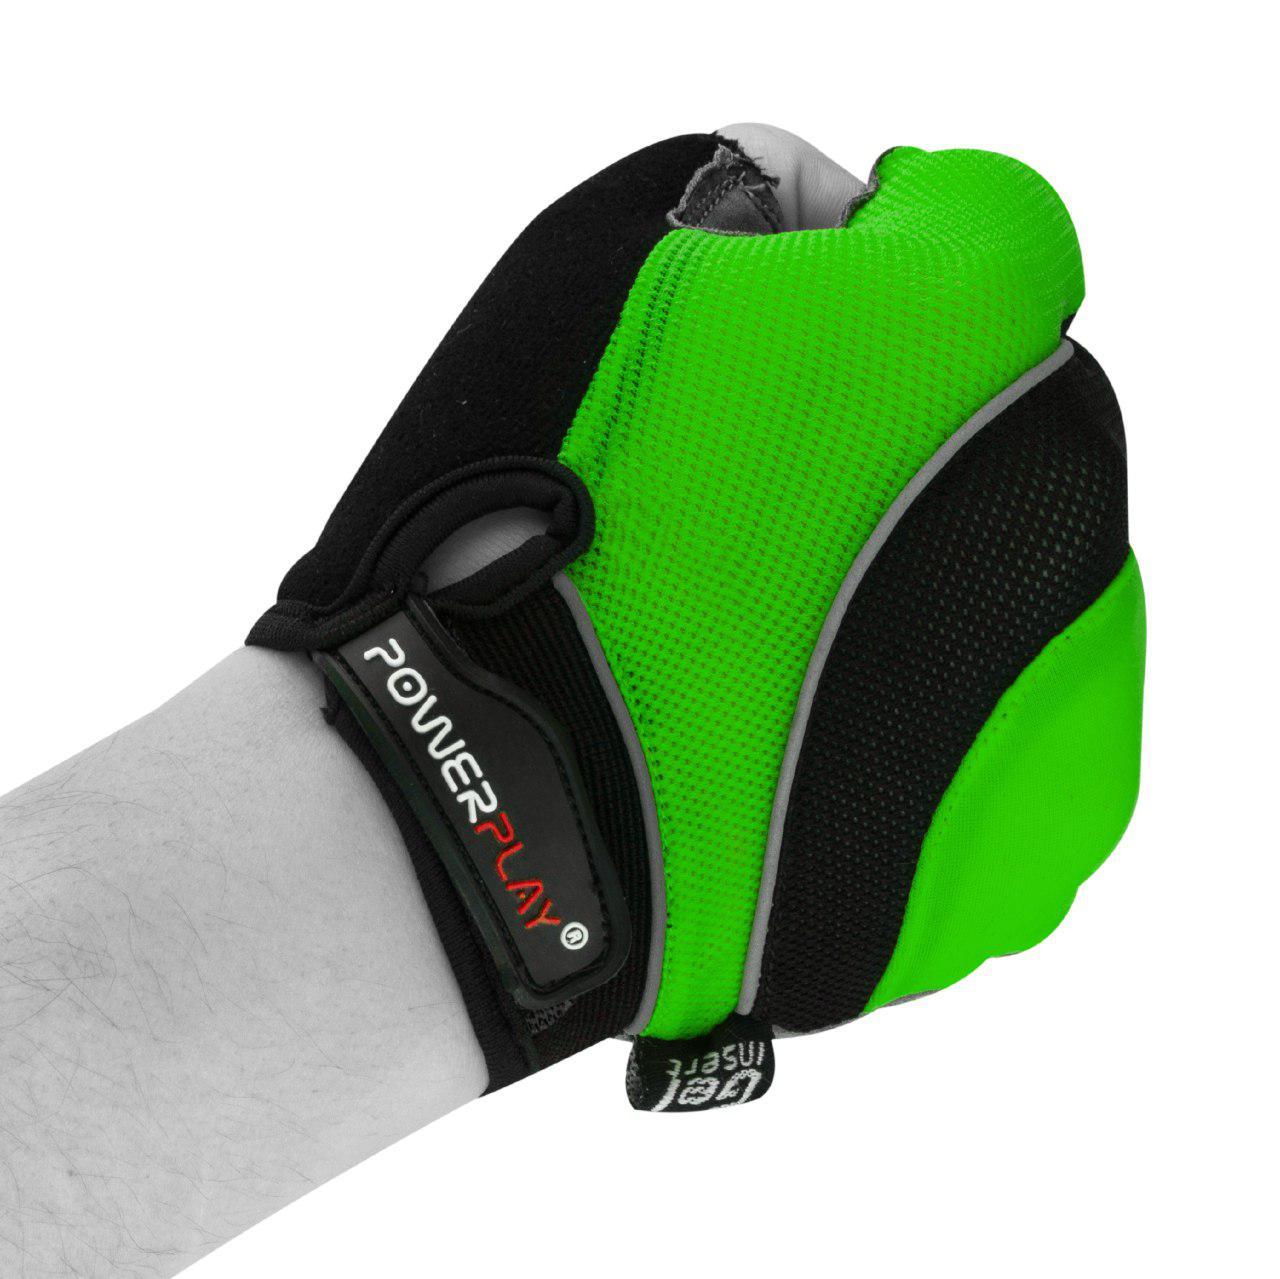 Велоперчатки PowerPlay 5037 Черно-зеленые M